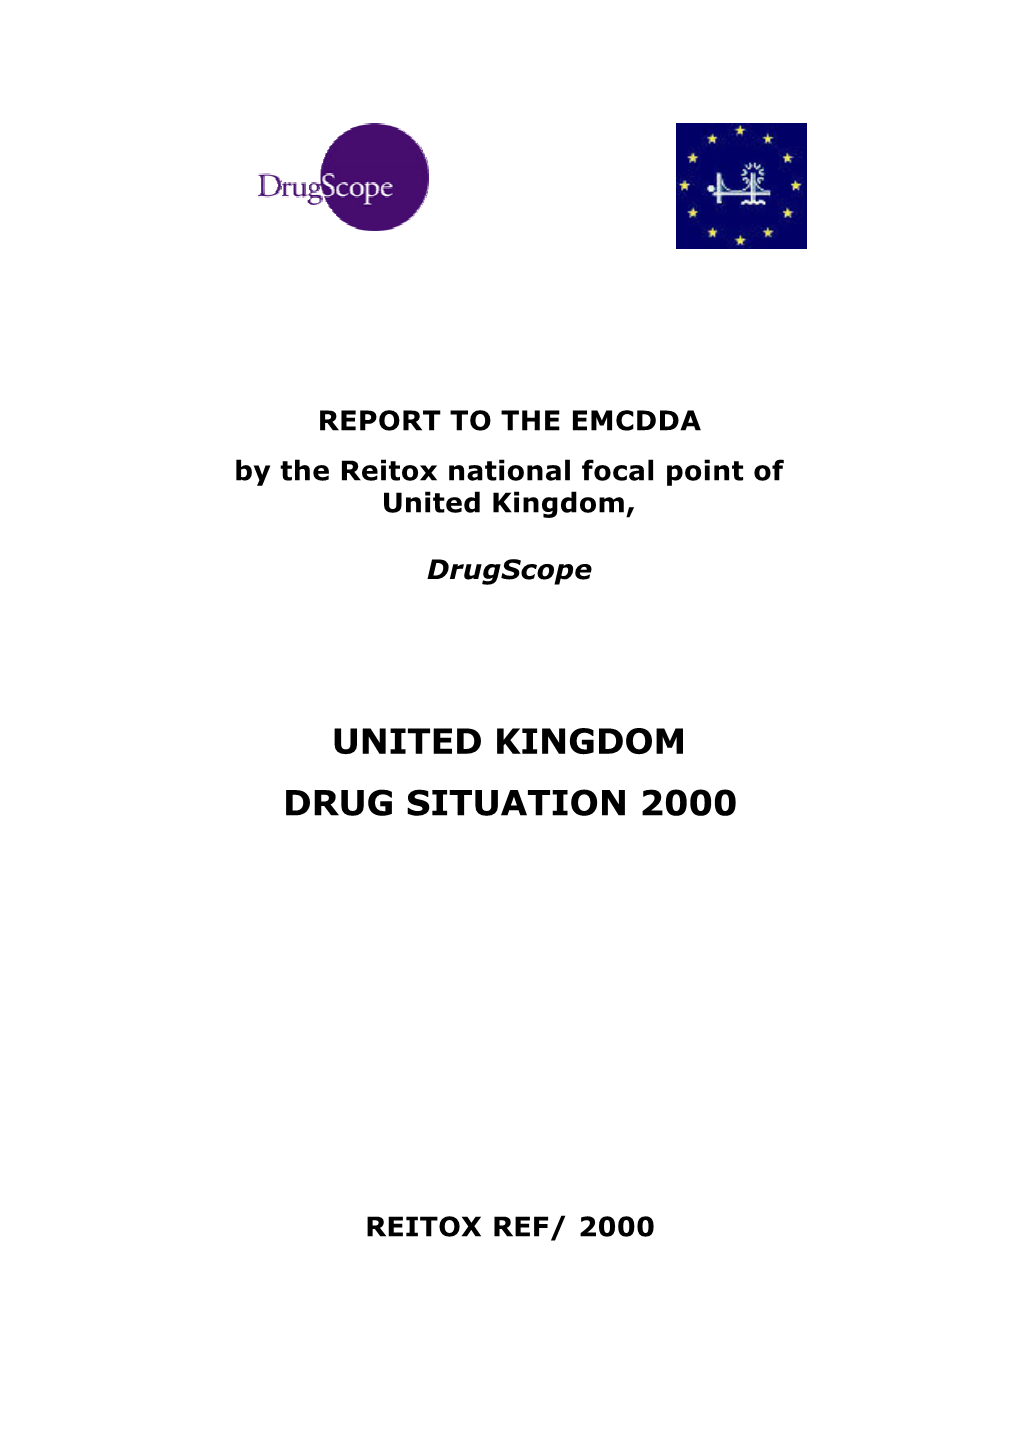 United Kingdom Drug Situation 2000